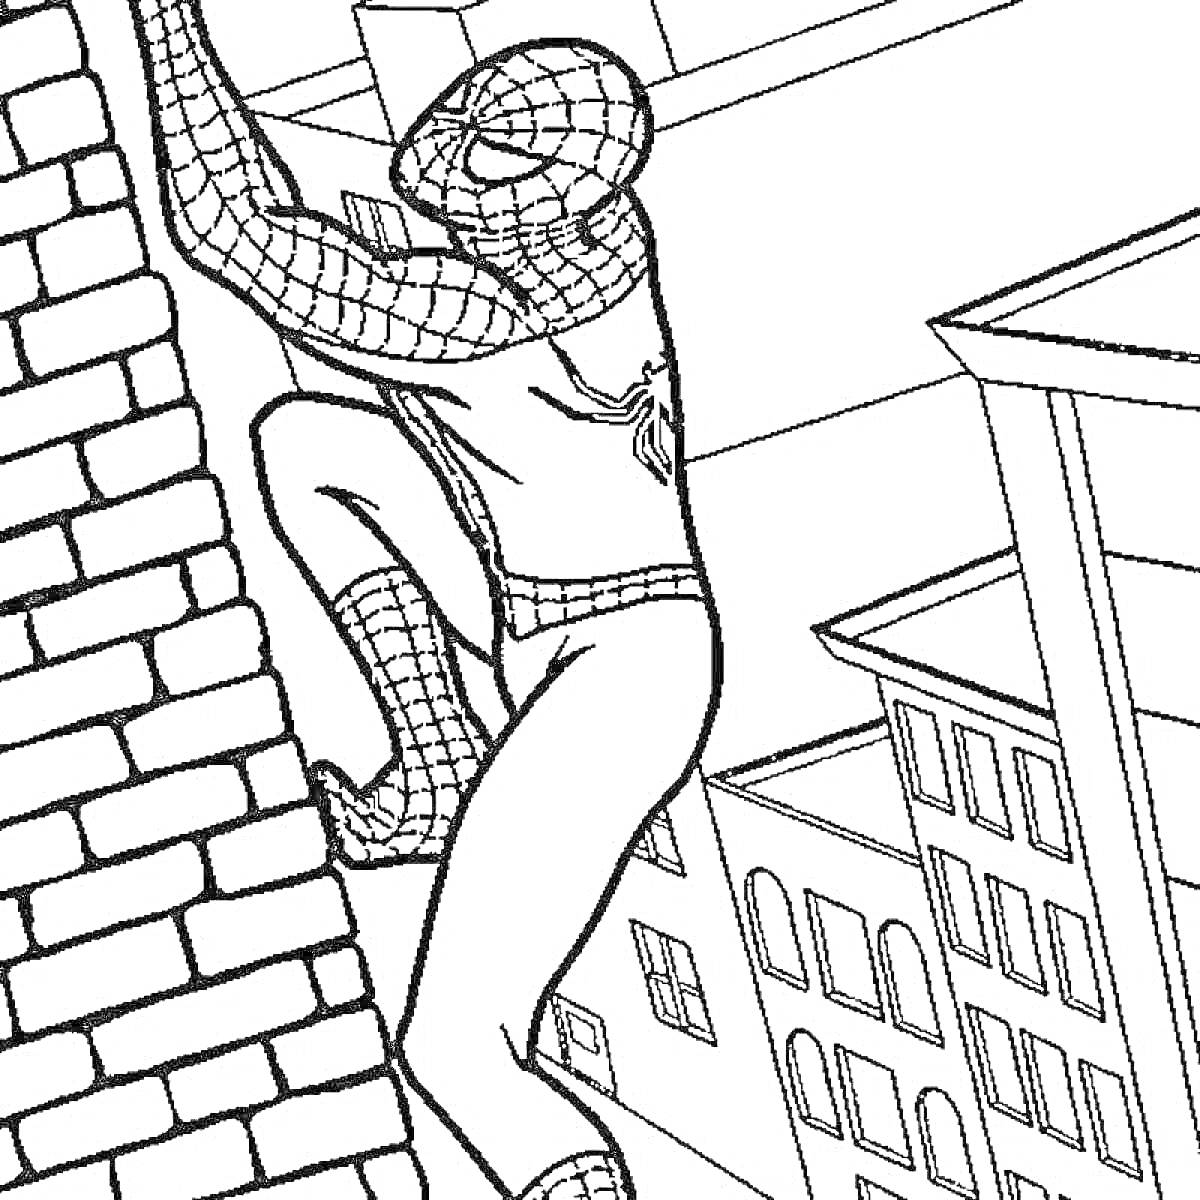 РаскраскаЧеловек-паук, карабкающийся по кирпичной стене, на фоне городских зданий.